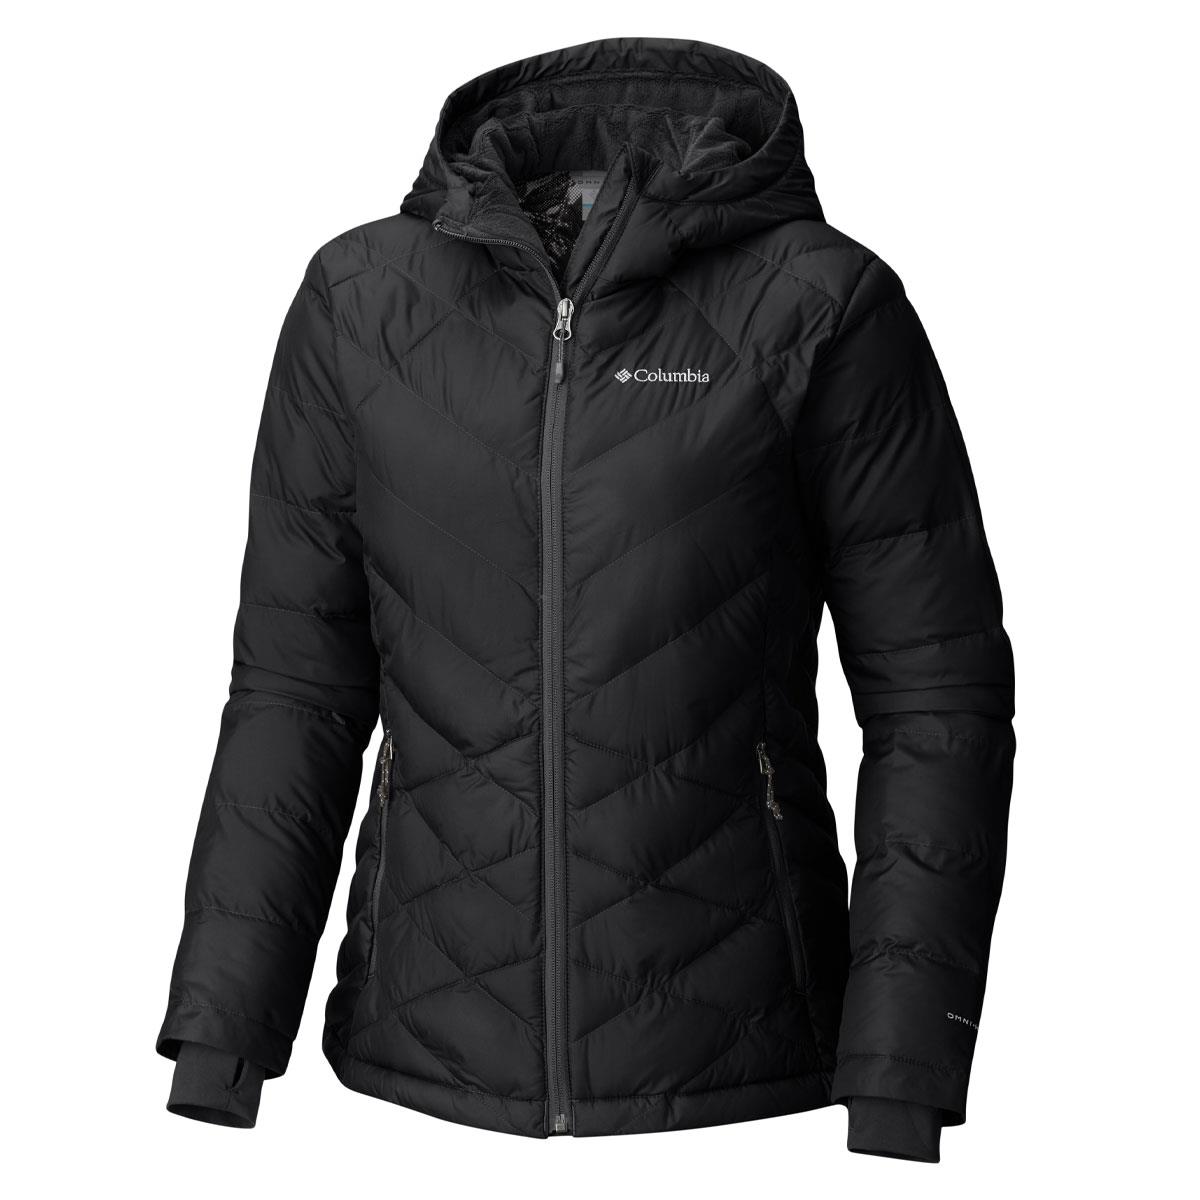 Columbia Powder Lite hooded jacket in black